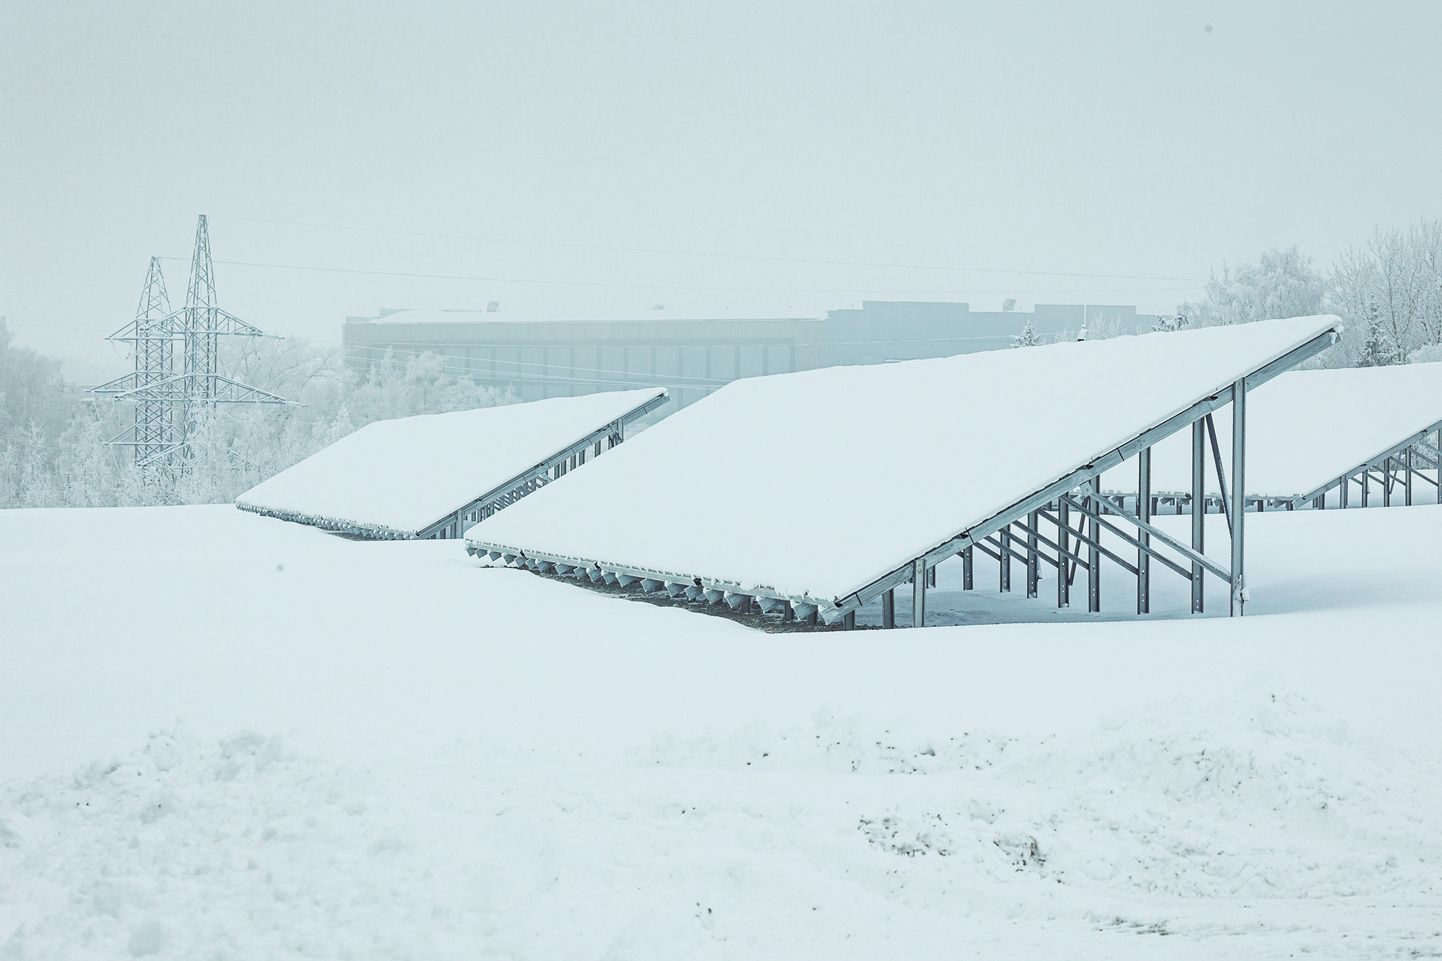 Estonia kaevanduse paekiviplatool asuvad päikesepaneelid olid pargi avamisel lume all, aga soojal ja pilvitul ajal suudavad nad toota nii palju elektrit, et hoida töös kaevanduse ventilatsiooniseadmeid ja veepumpasid.